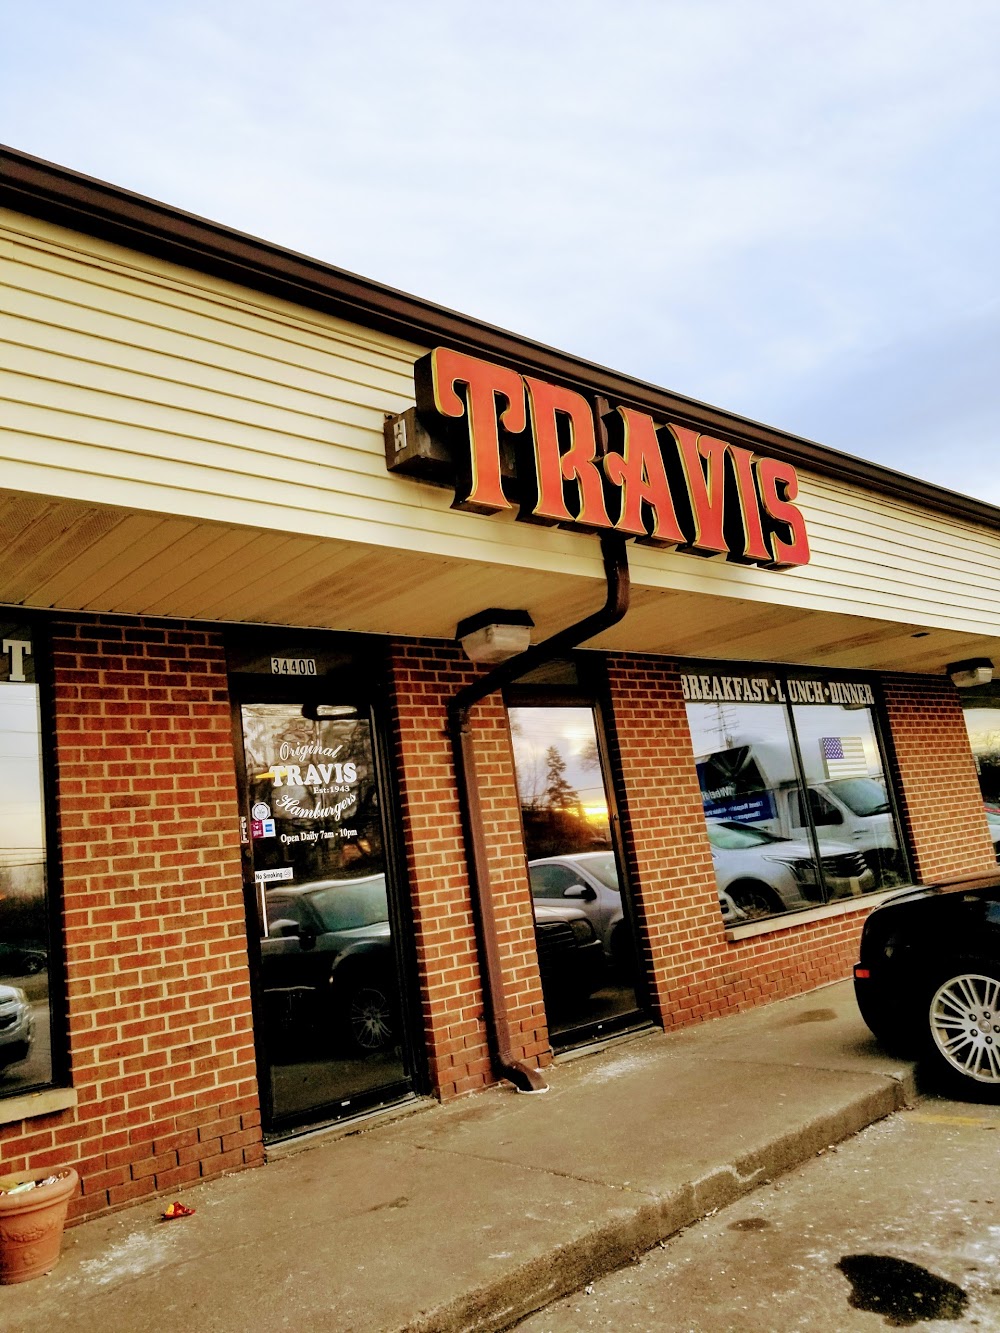 Travis Restaurant